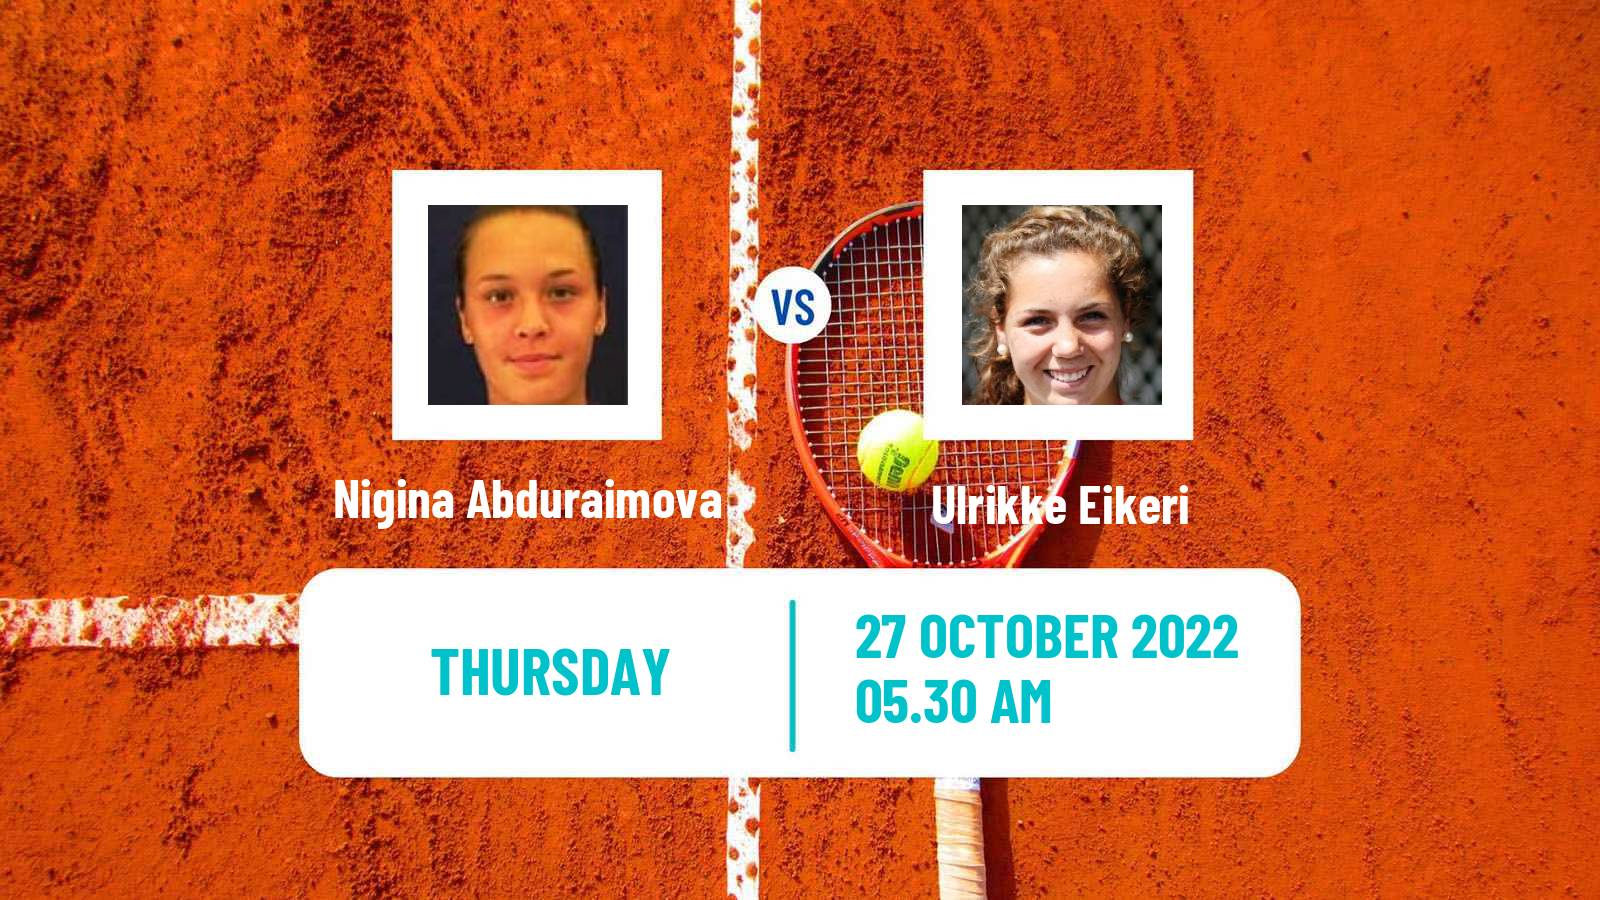 Tennis ITF Tournaments Nigina Abduraimova - Ulrikke Eikeri